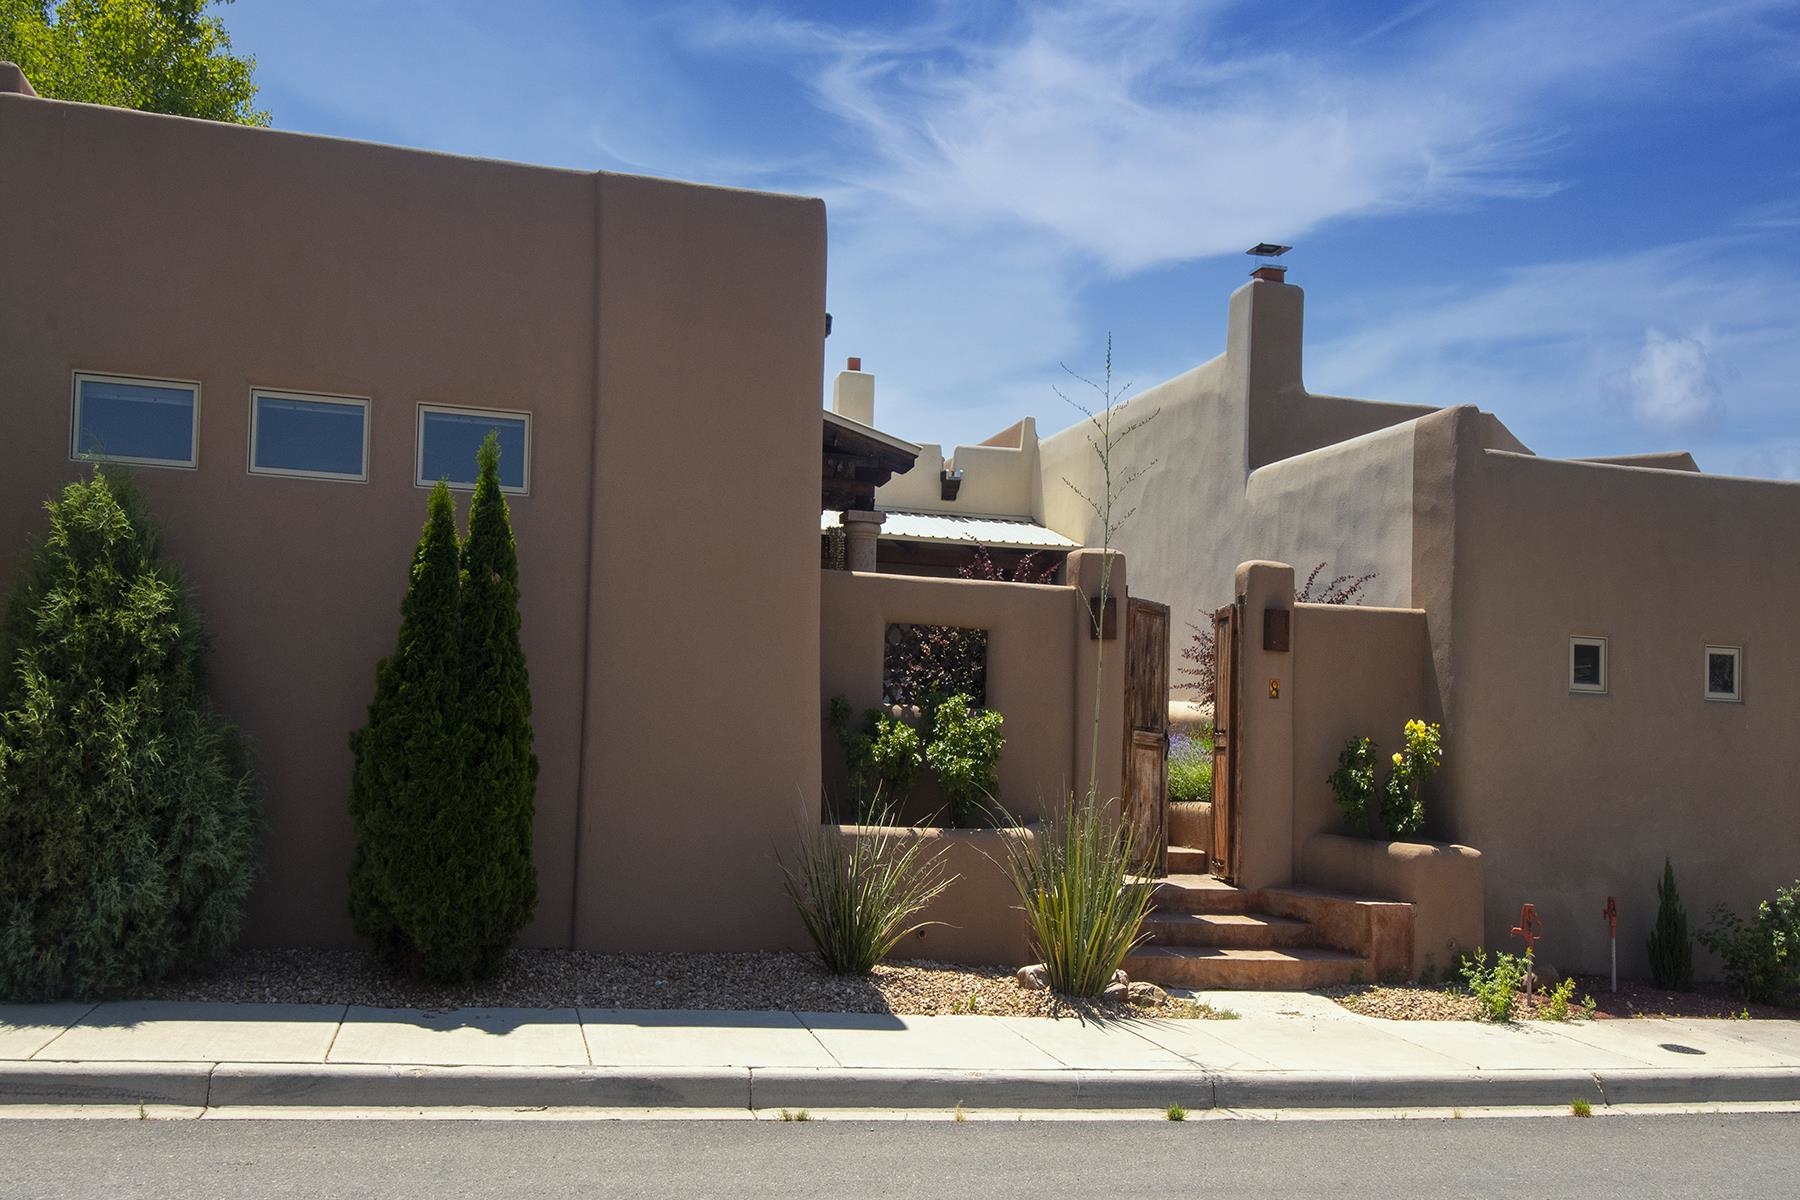 8 Calle Vecinos, Santa Fe, New Mexico 87507, 3 Bedrooms Bedrooms, ,3 BathroomsBathrooms,Residential,For Sale,8 Calle Vecinos,202202233